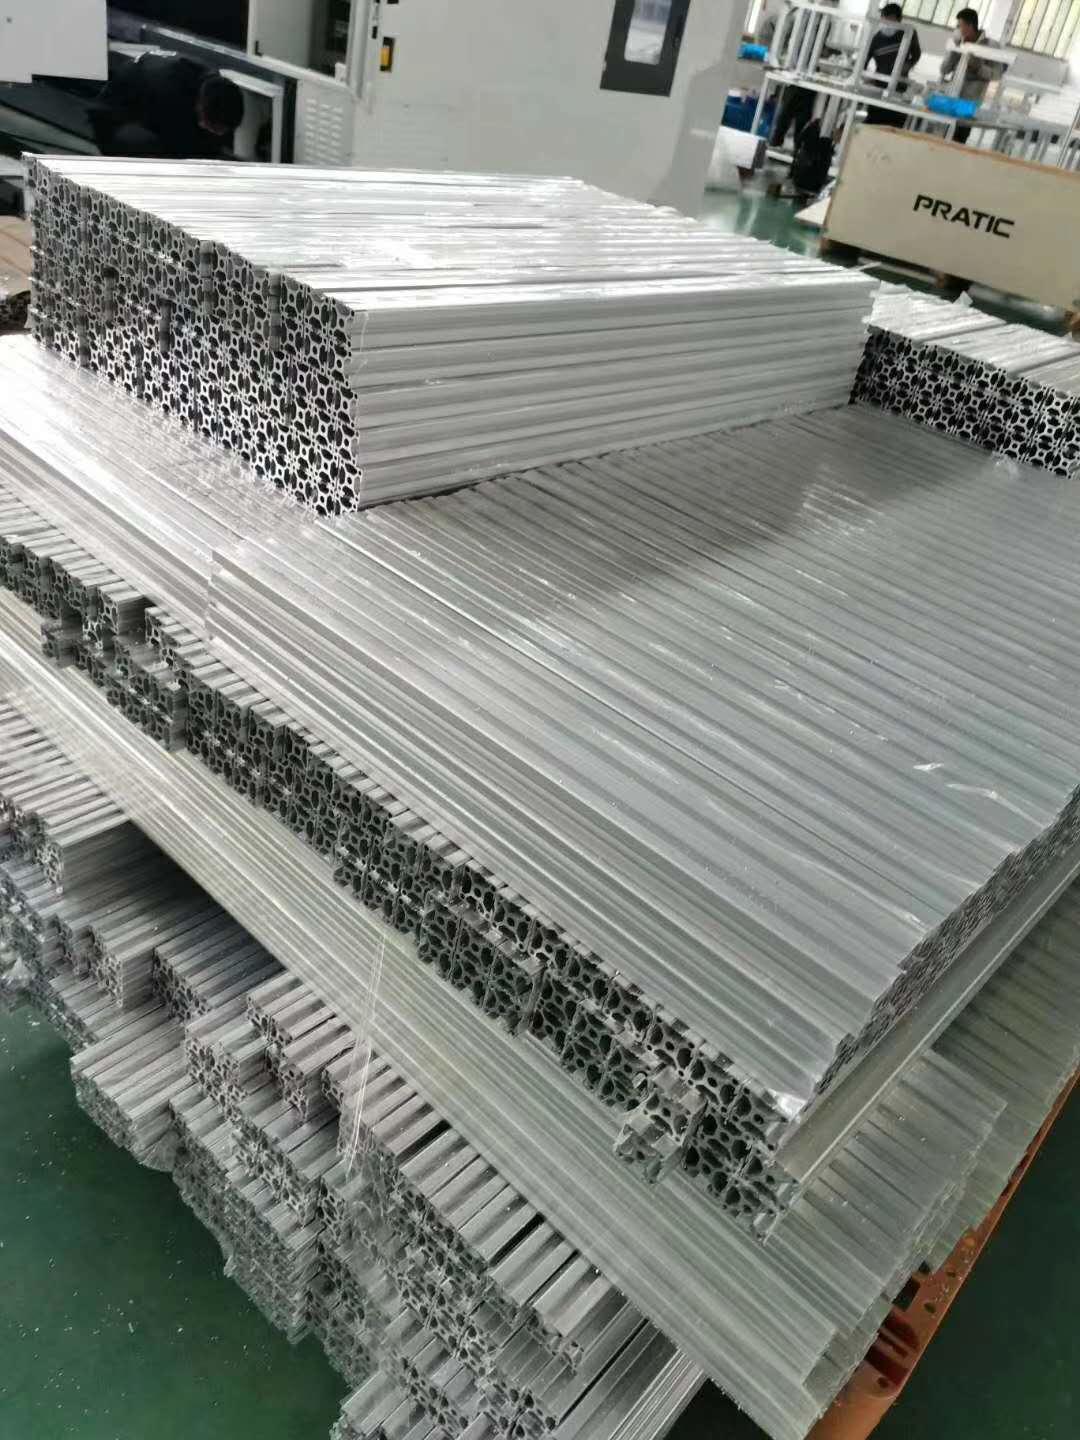 工业铝型材加工打孔 品牌铝合金定制厂家澳宏铝业